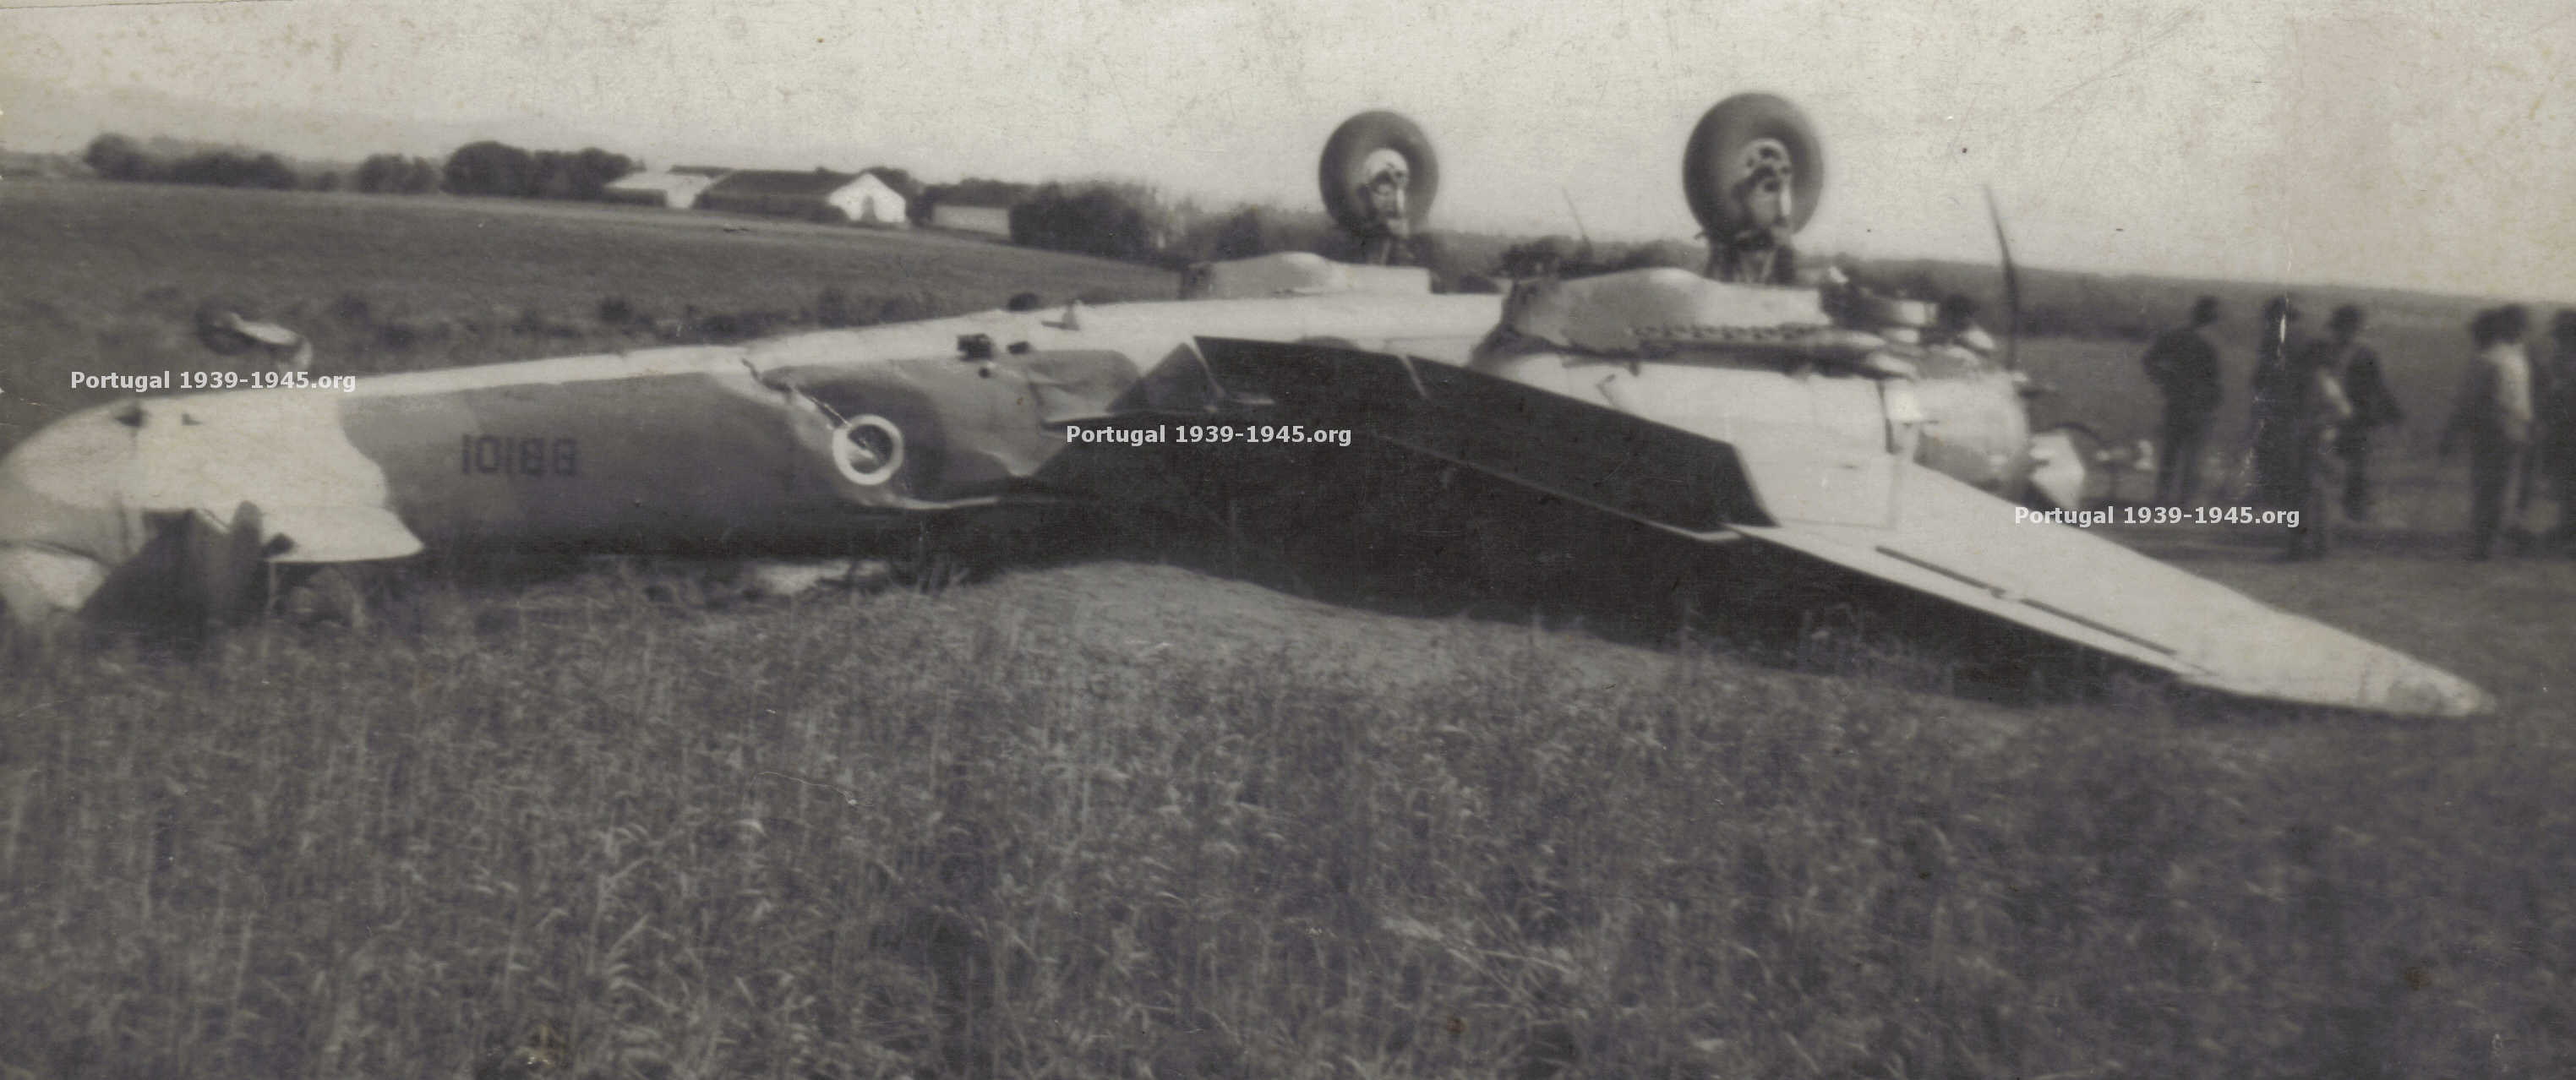 O Bristol Blenheim capotado depois da aterragem acidentada em Vila Nova de Milfontes  (Foto: Colecção particular)